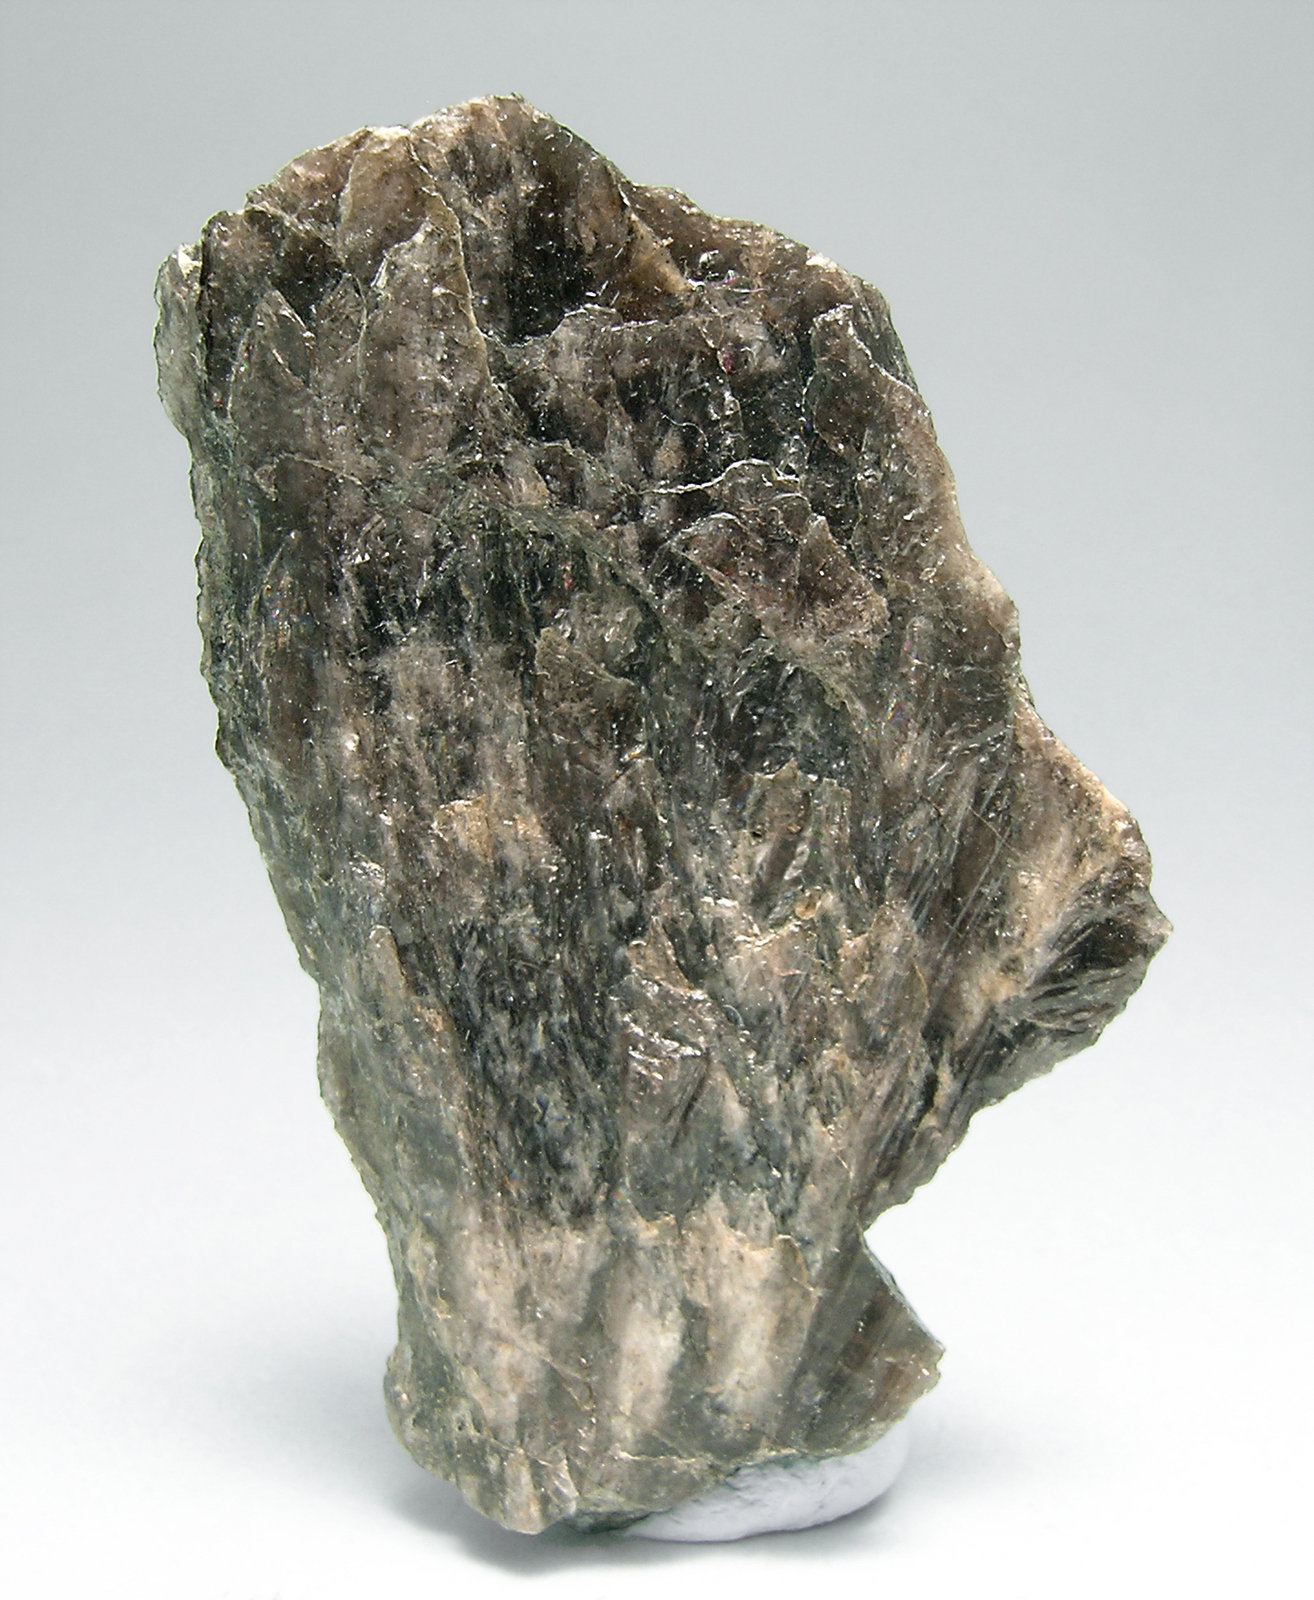 specimens/s_imagesN4/Ferro-axinite-RA58N4.jpg